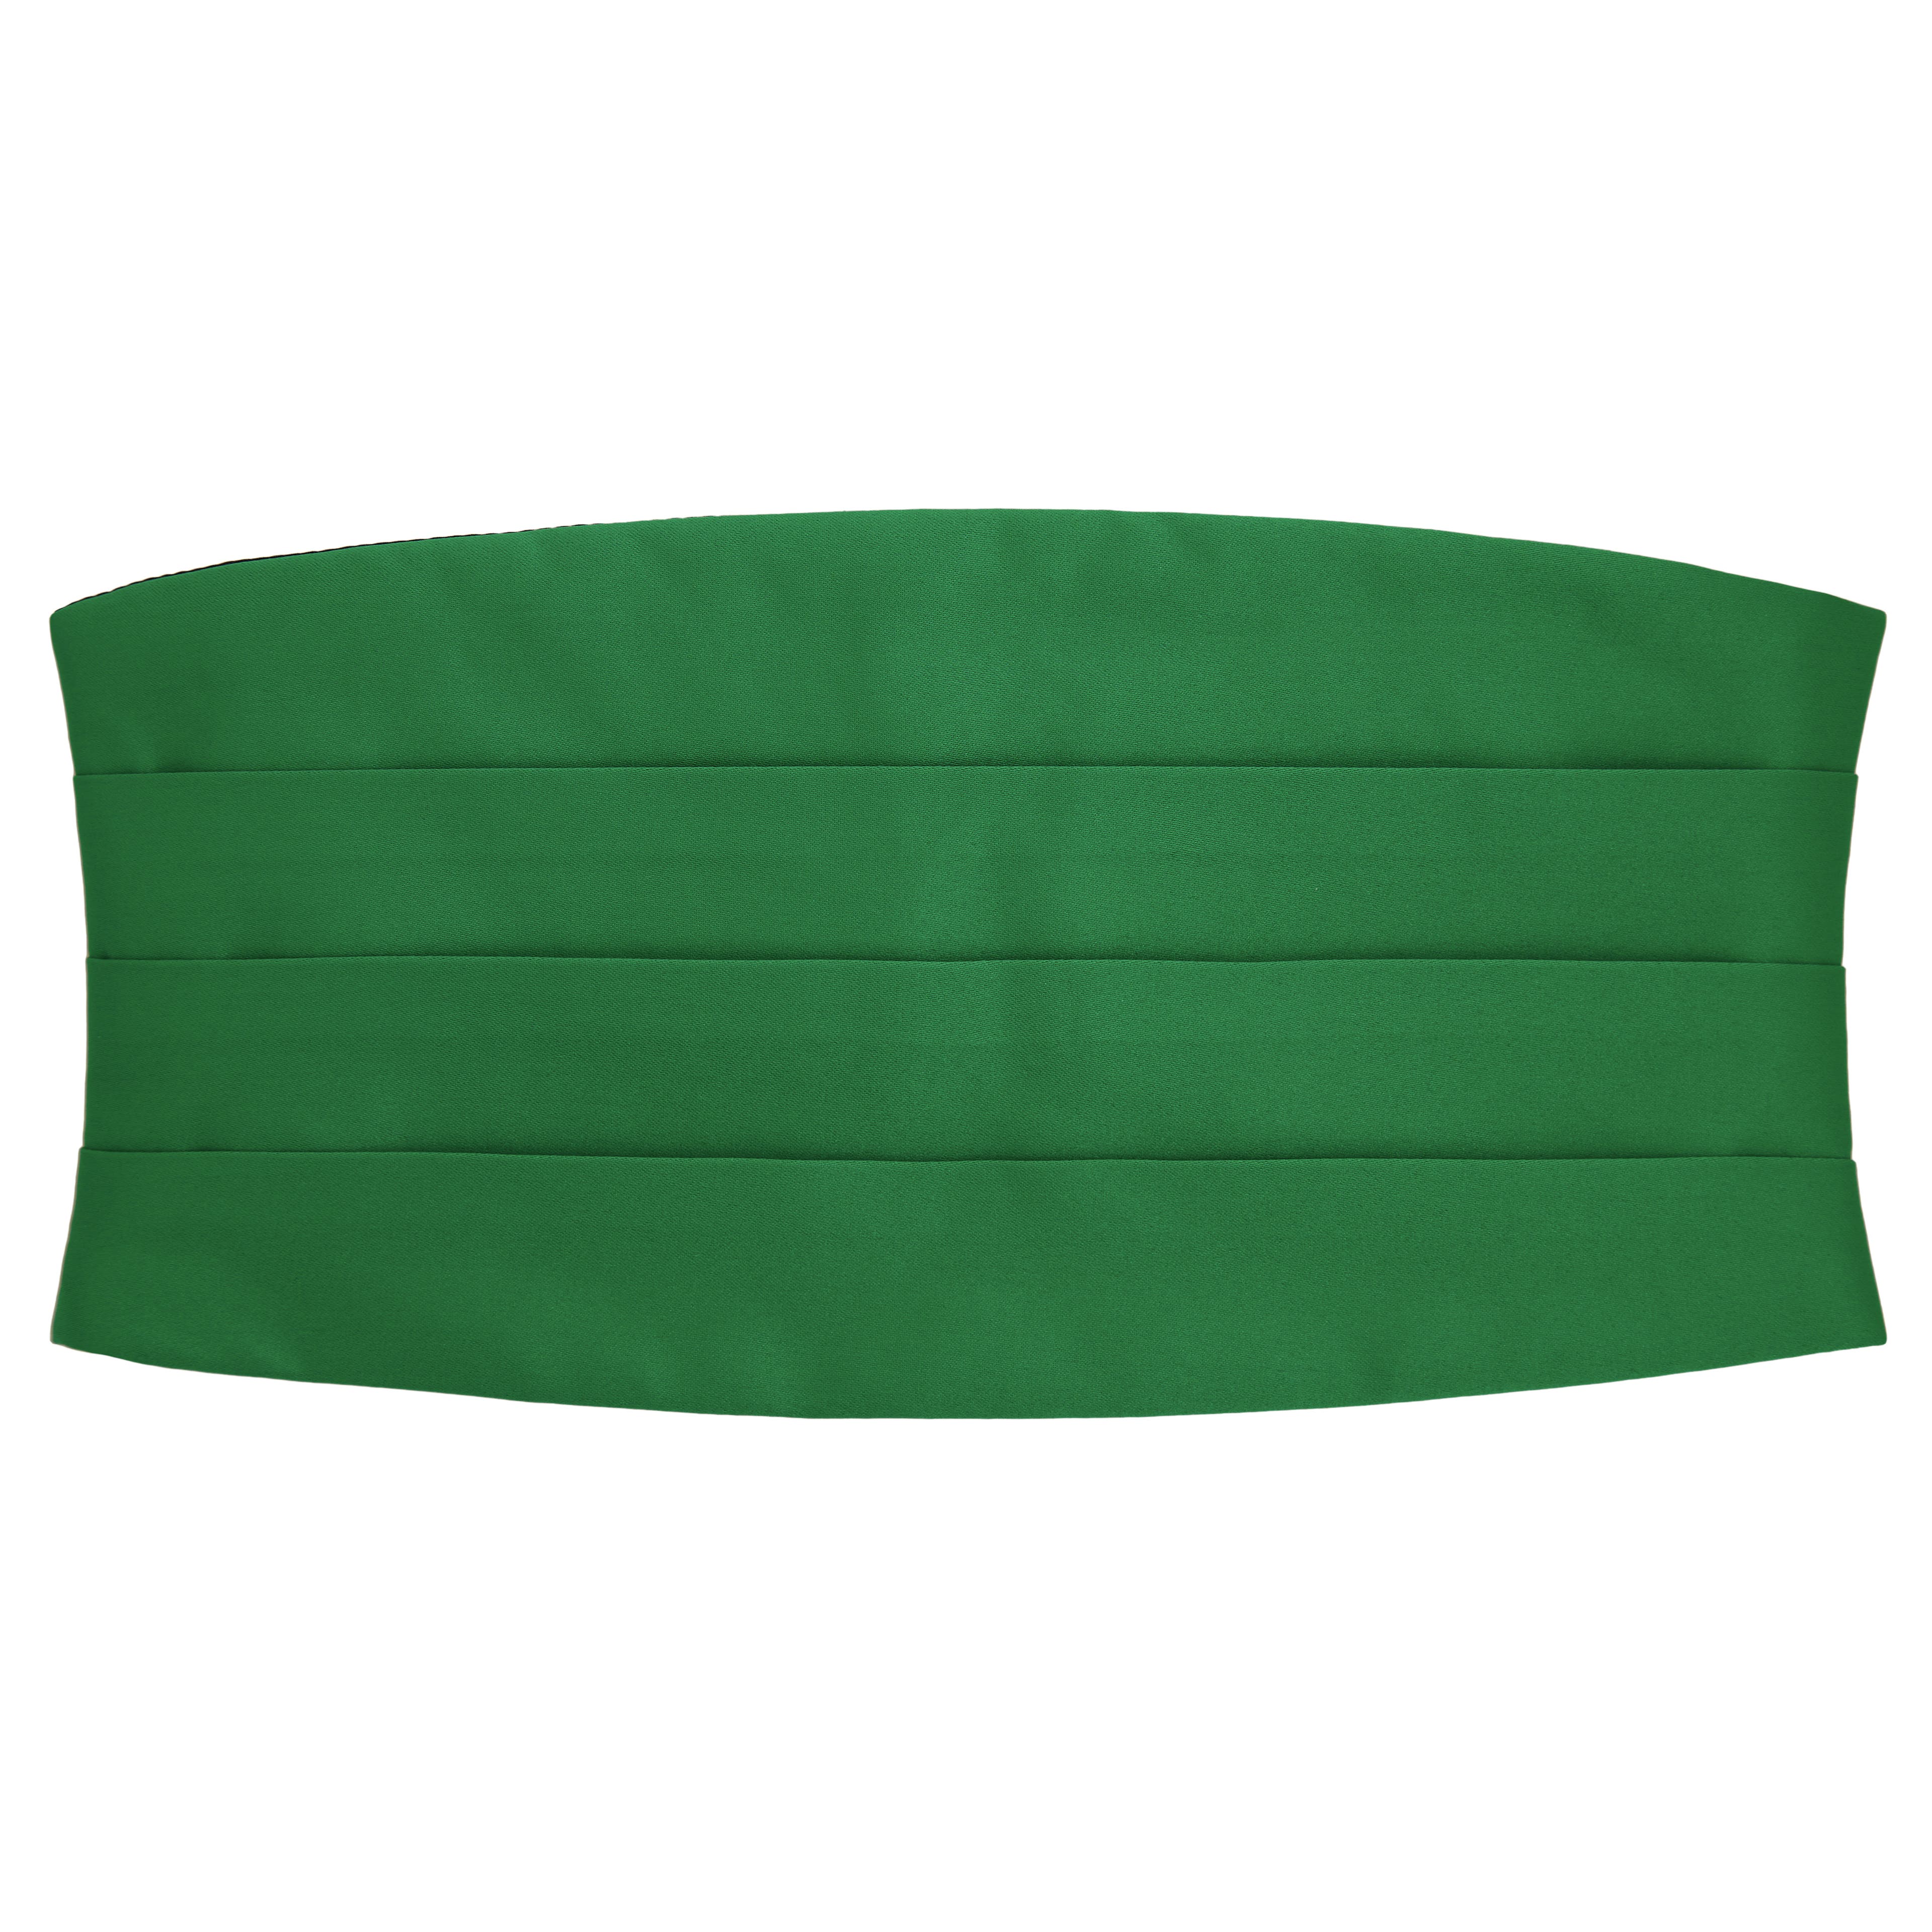 Základná šerpa v smaragdovej zelenej farbe